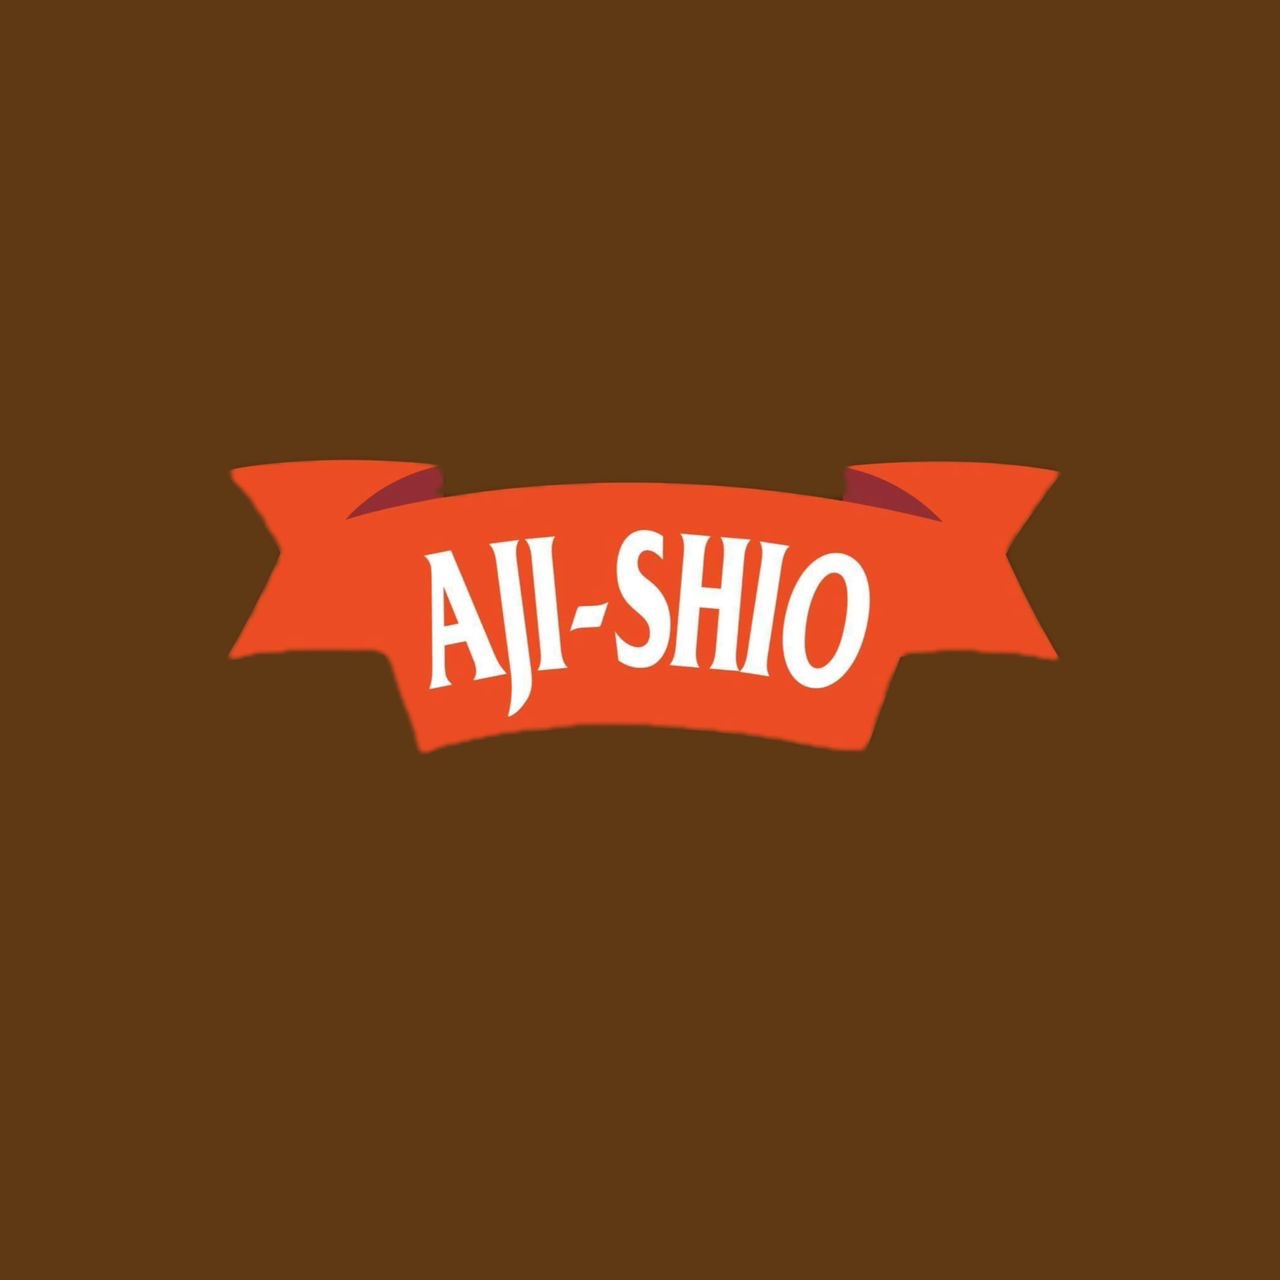 Aji-Shio